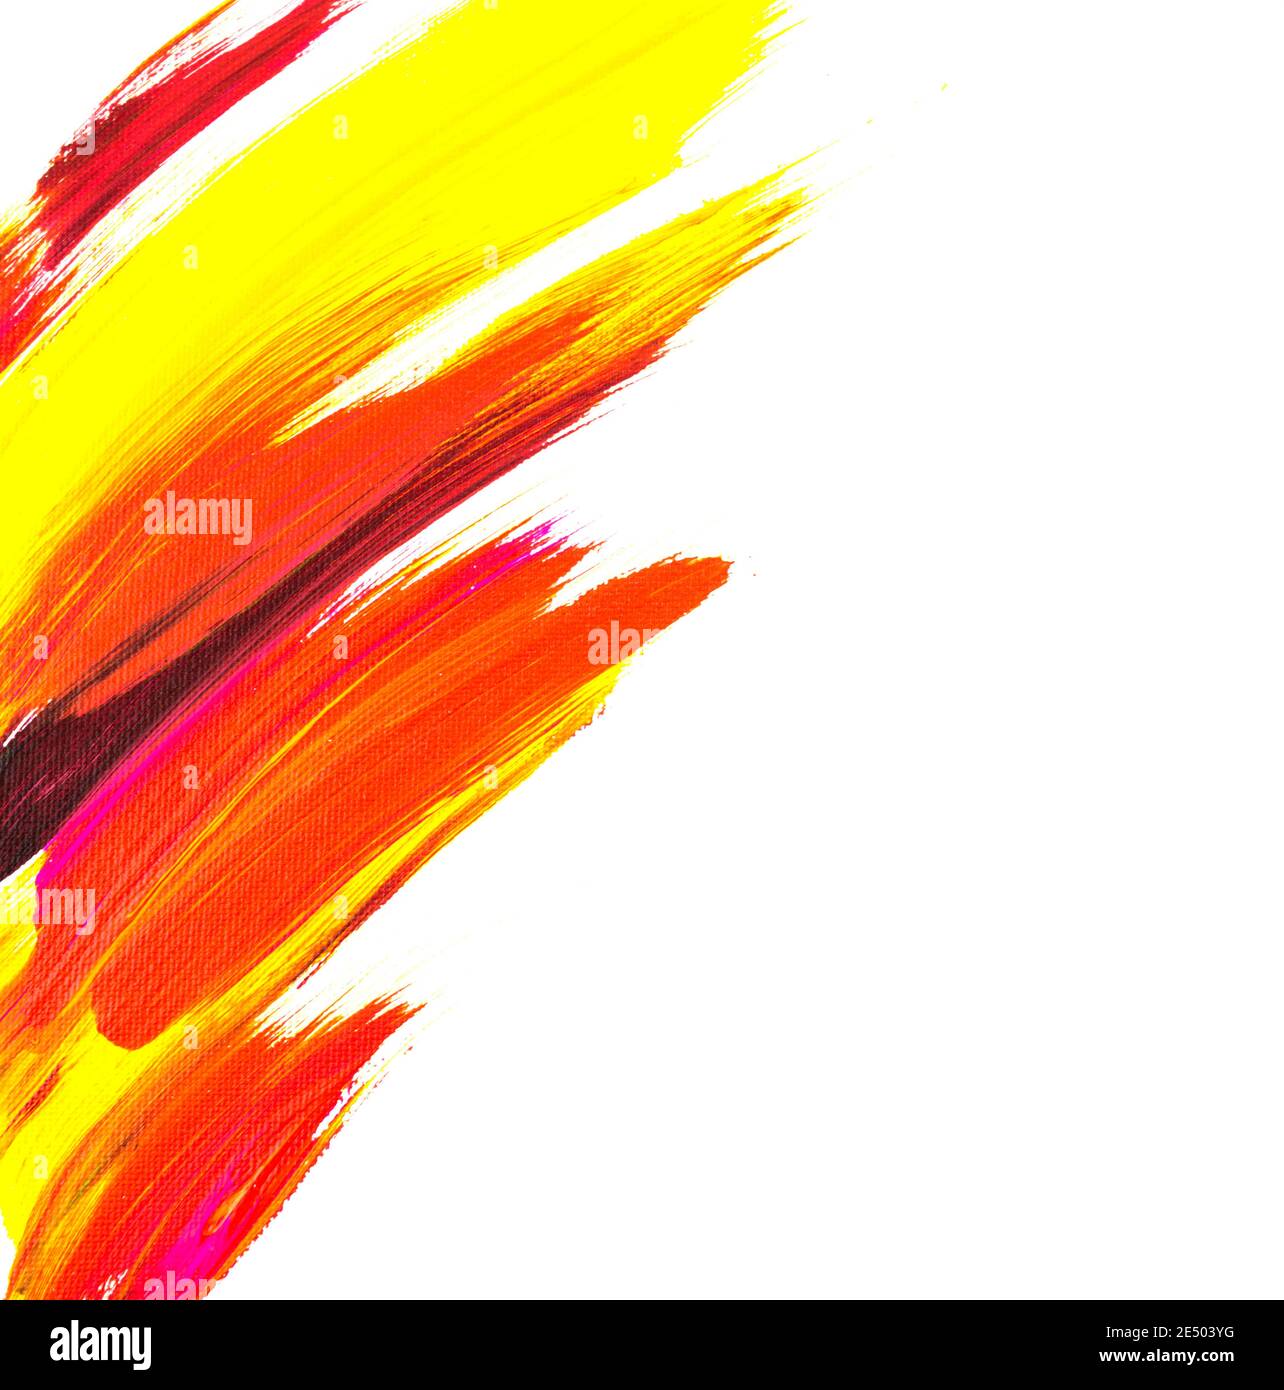 Acryl-Pinselstriche von lebendigen gelben, roten, violetten Farben. Abstrakter Hintergrund. Malerei auf Leinwand. Handgefertigt, handgezeichnet. Bildende Kunst, Kunstwerk. Modern. Stockfoto